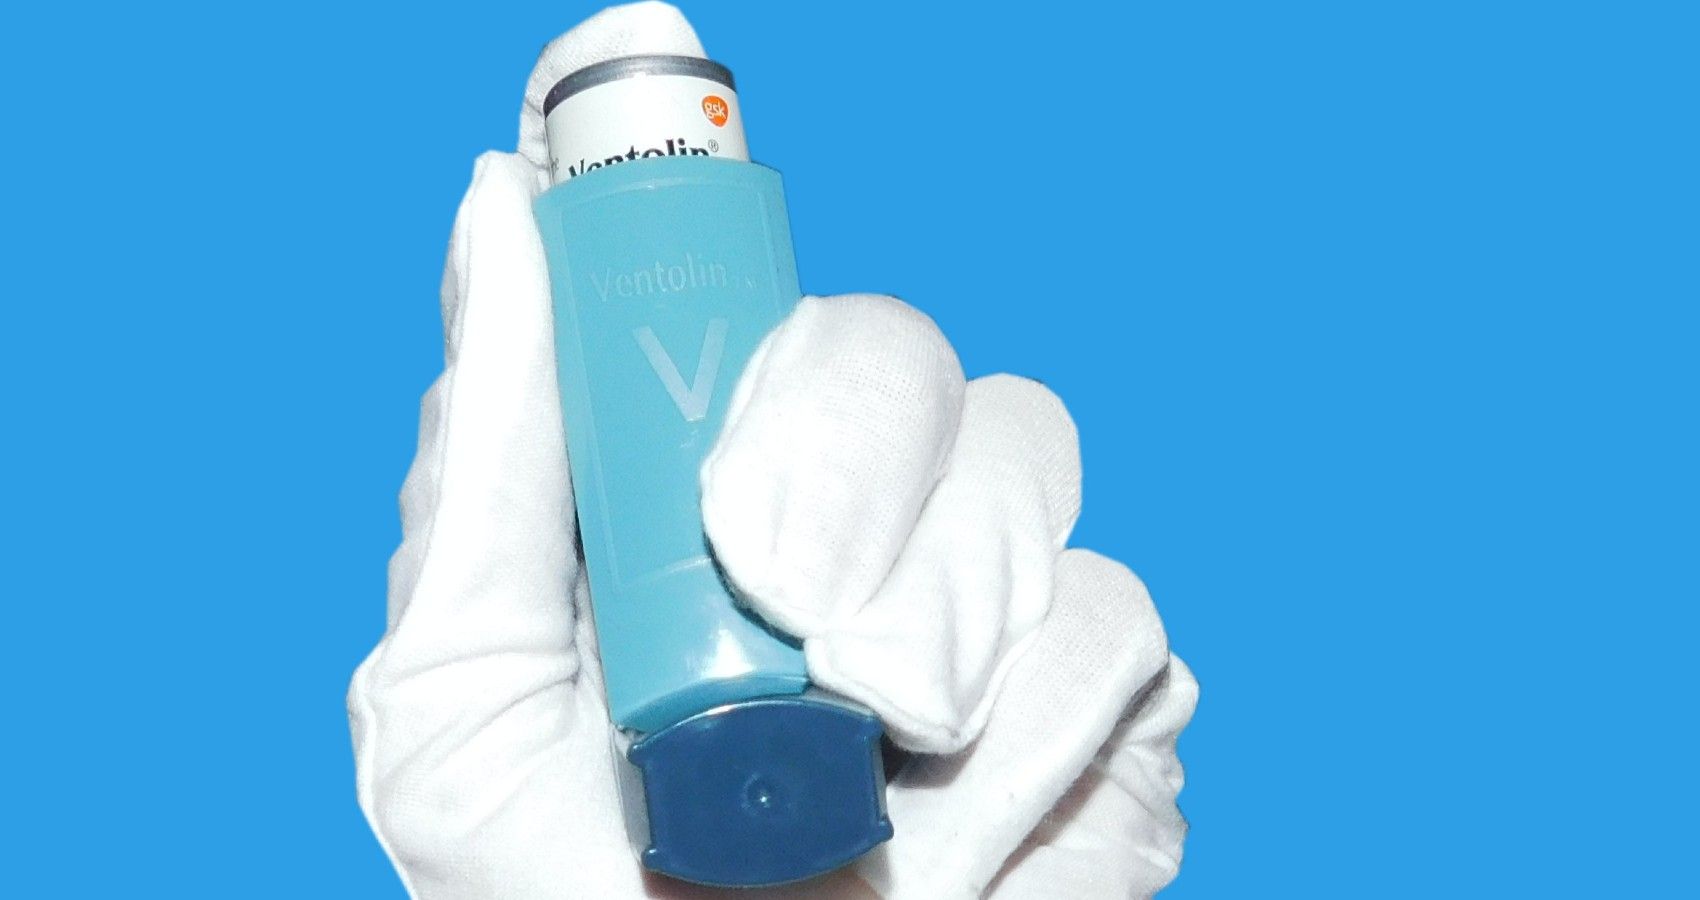 A gloved hand holding an asthma inhaler